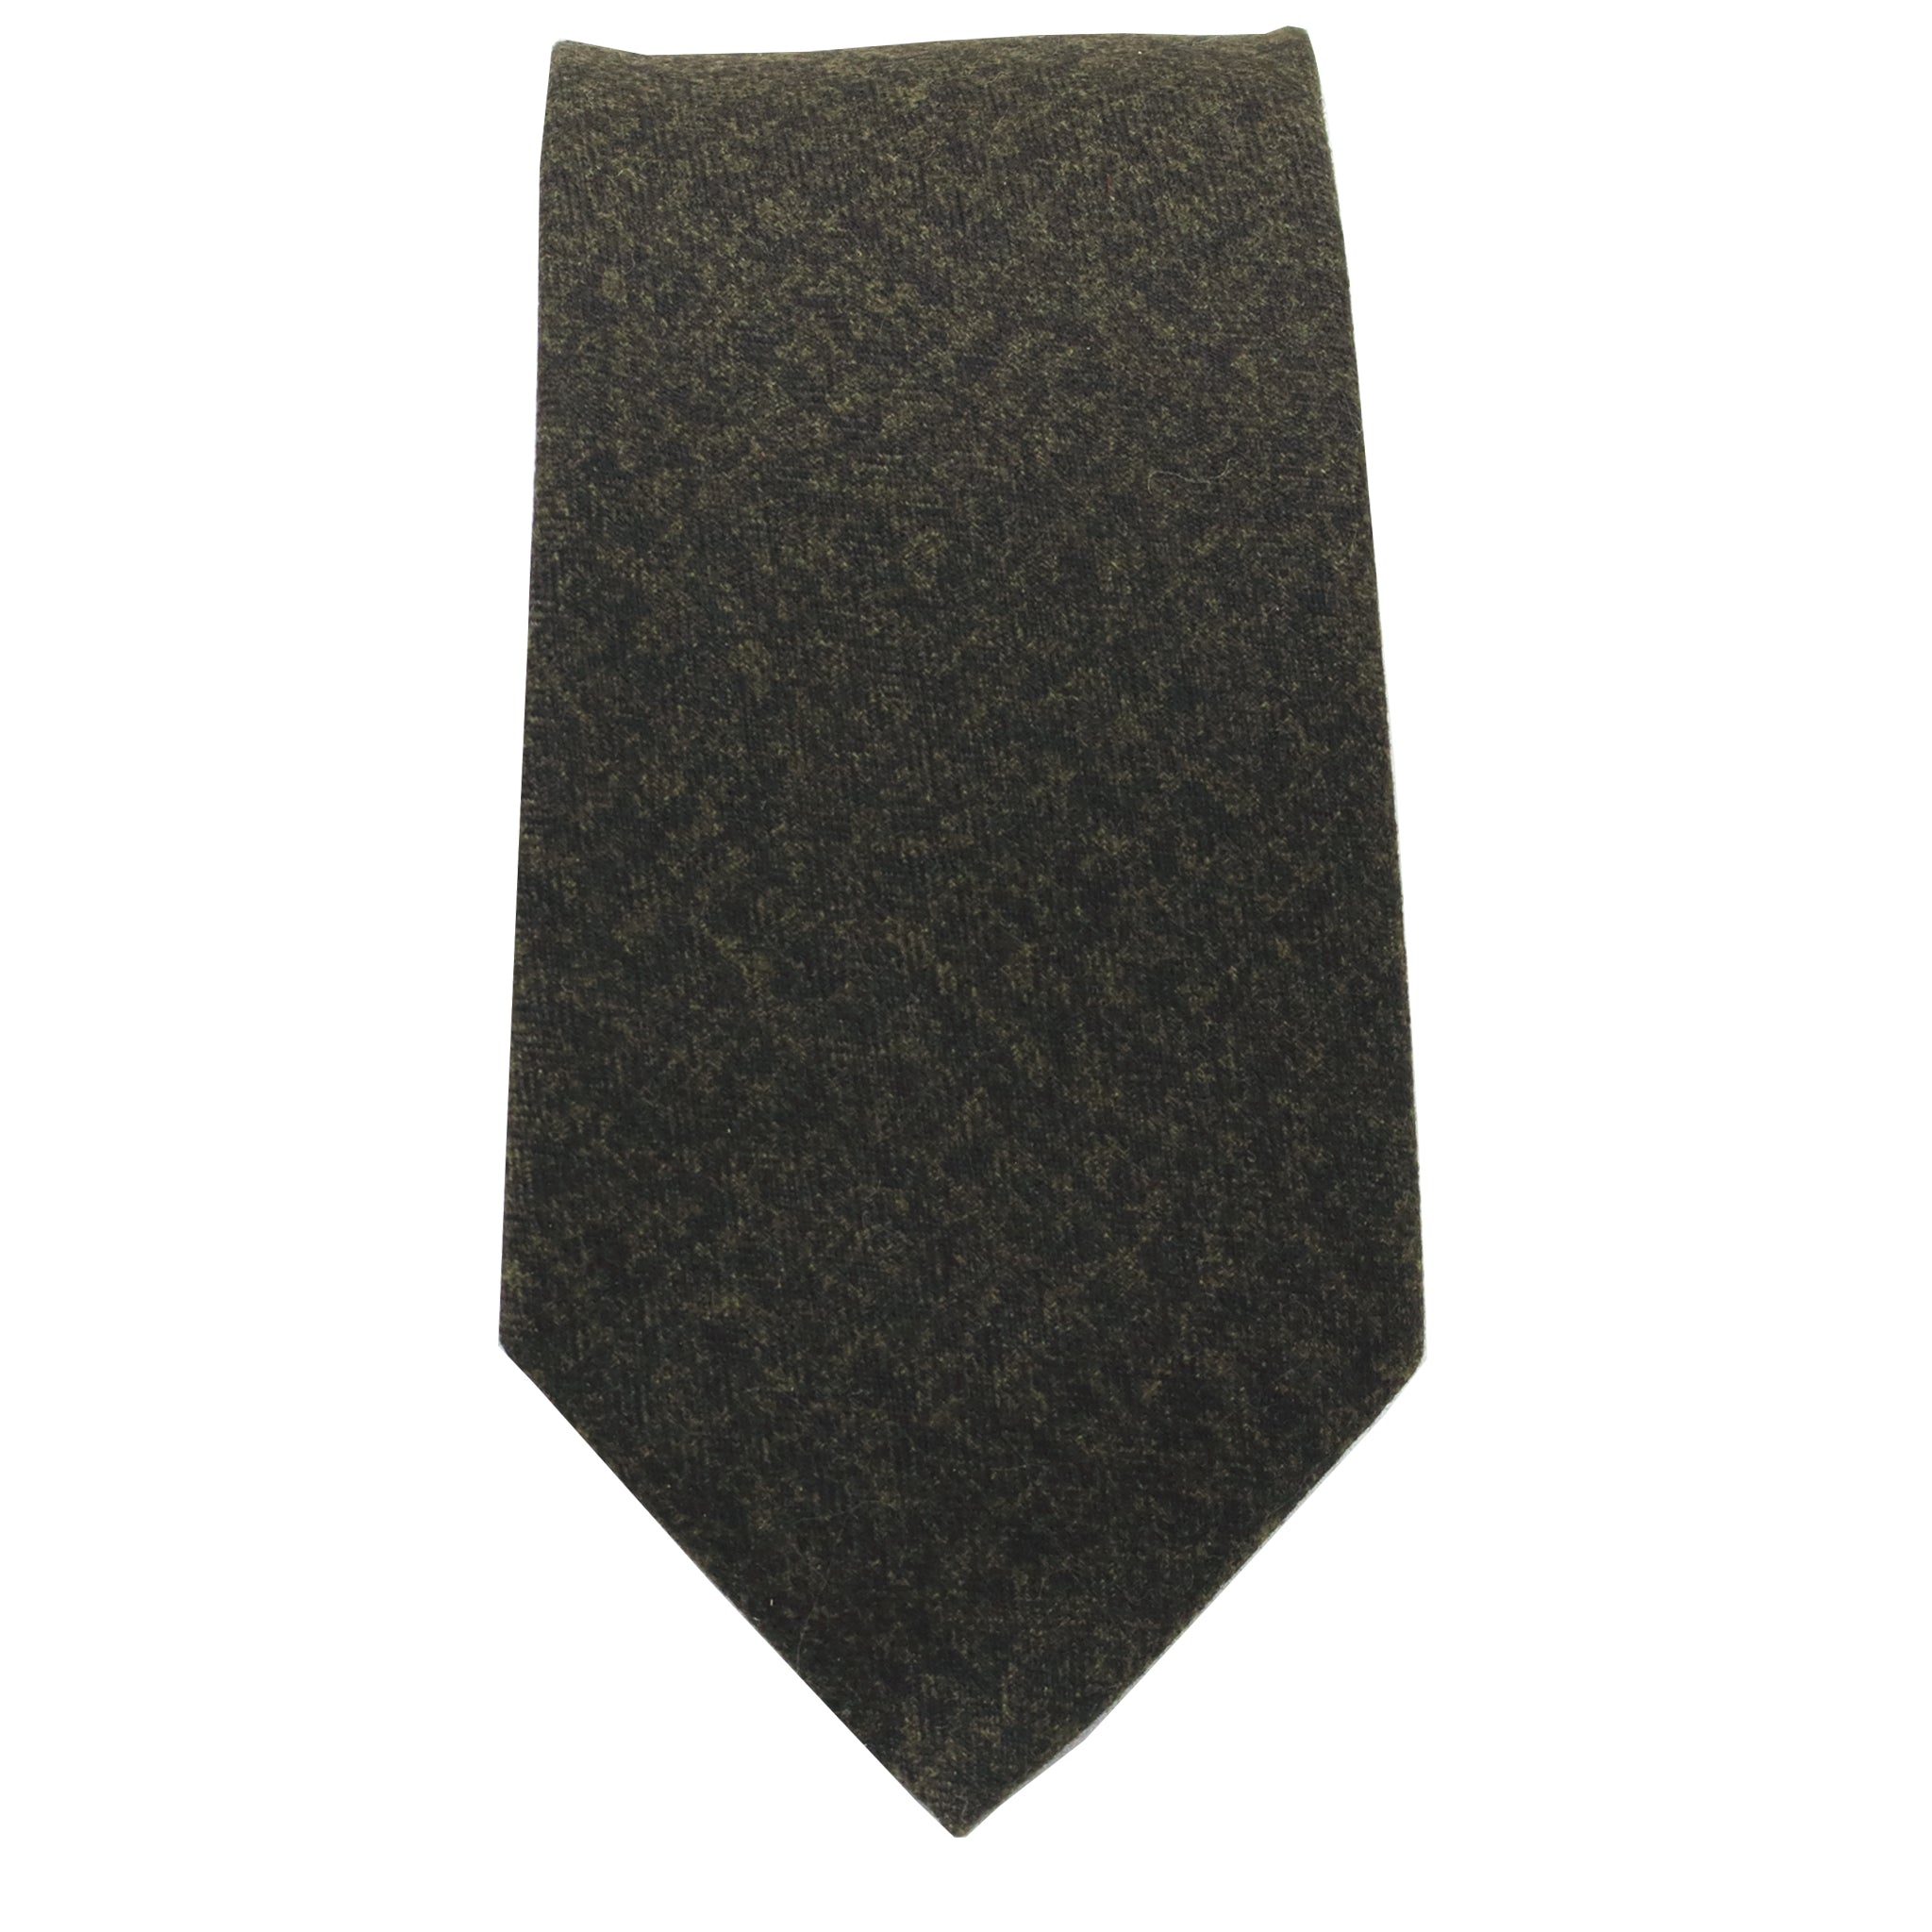 Dark Olive Tie